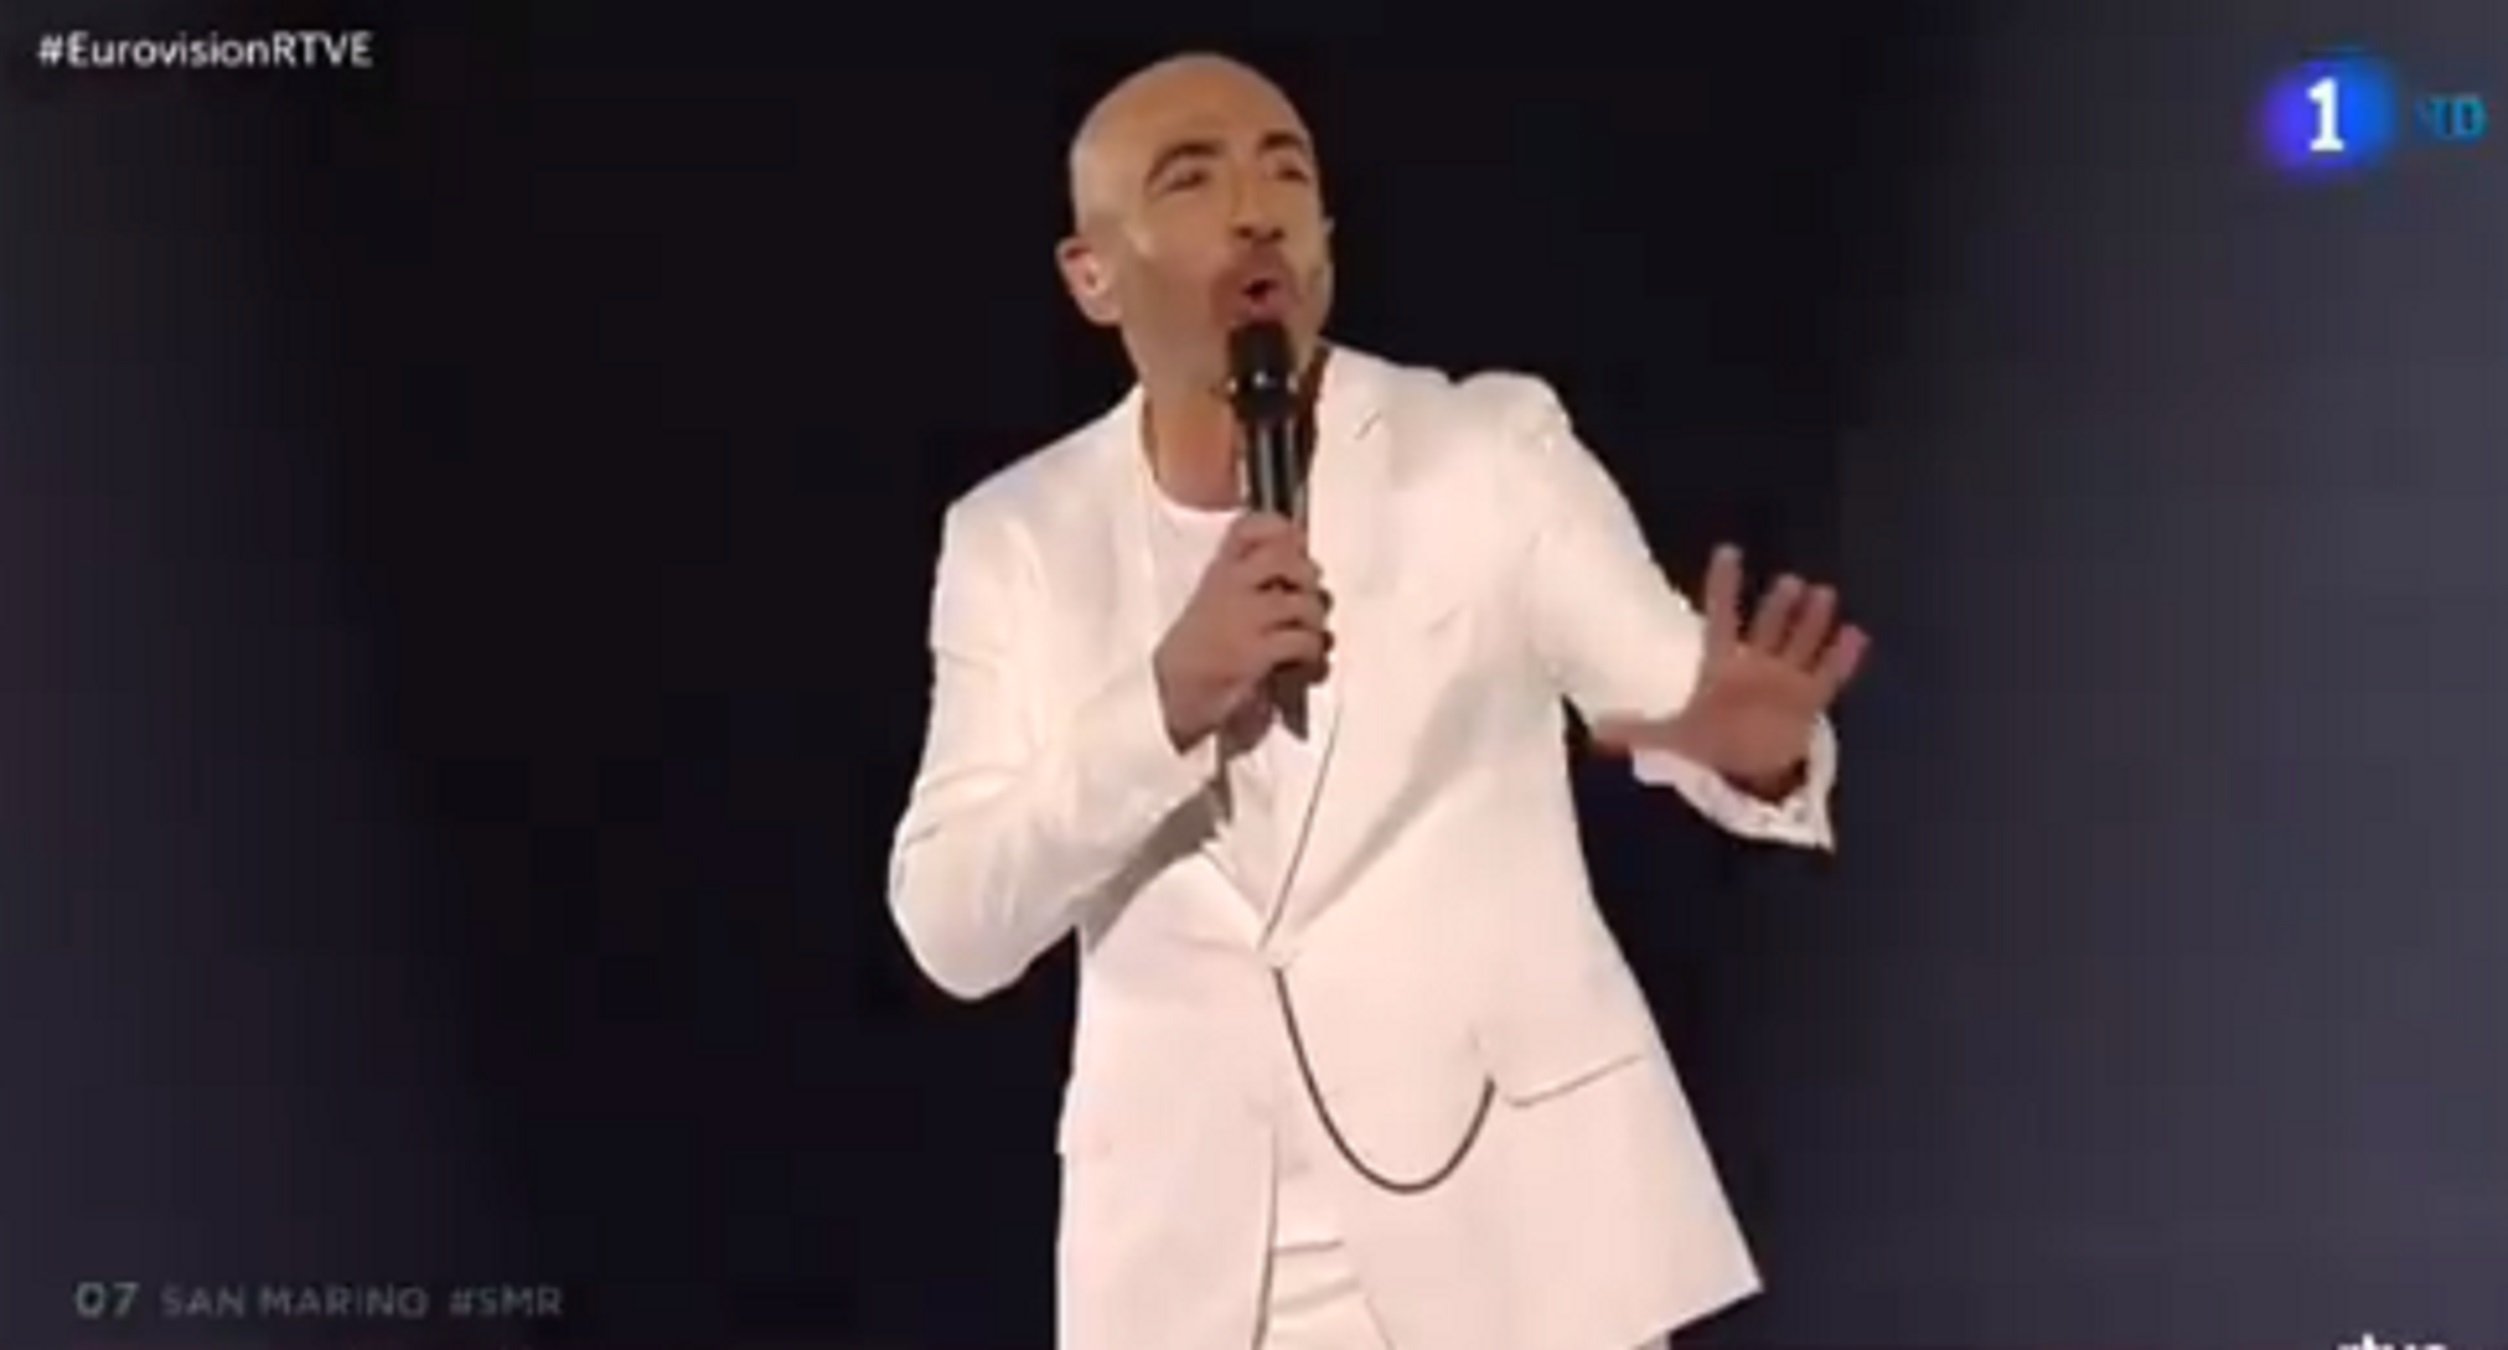 "¡Es mi cuñao borracho en una boda!": escarni massiu a la xarxa amb Eurovisió